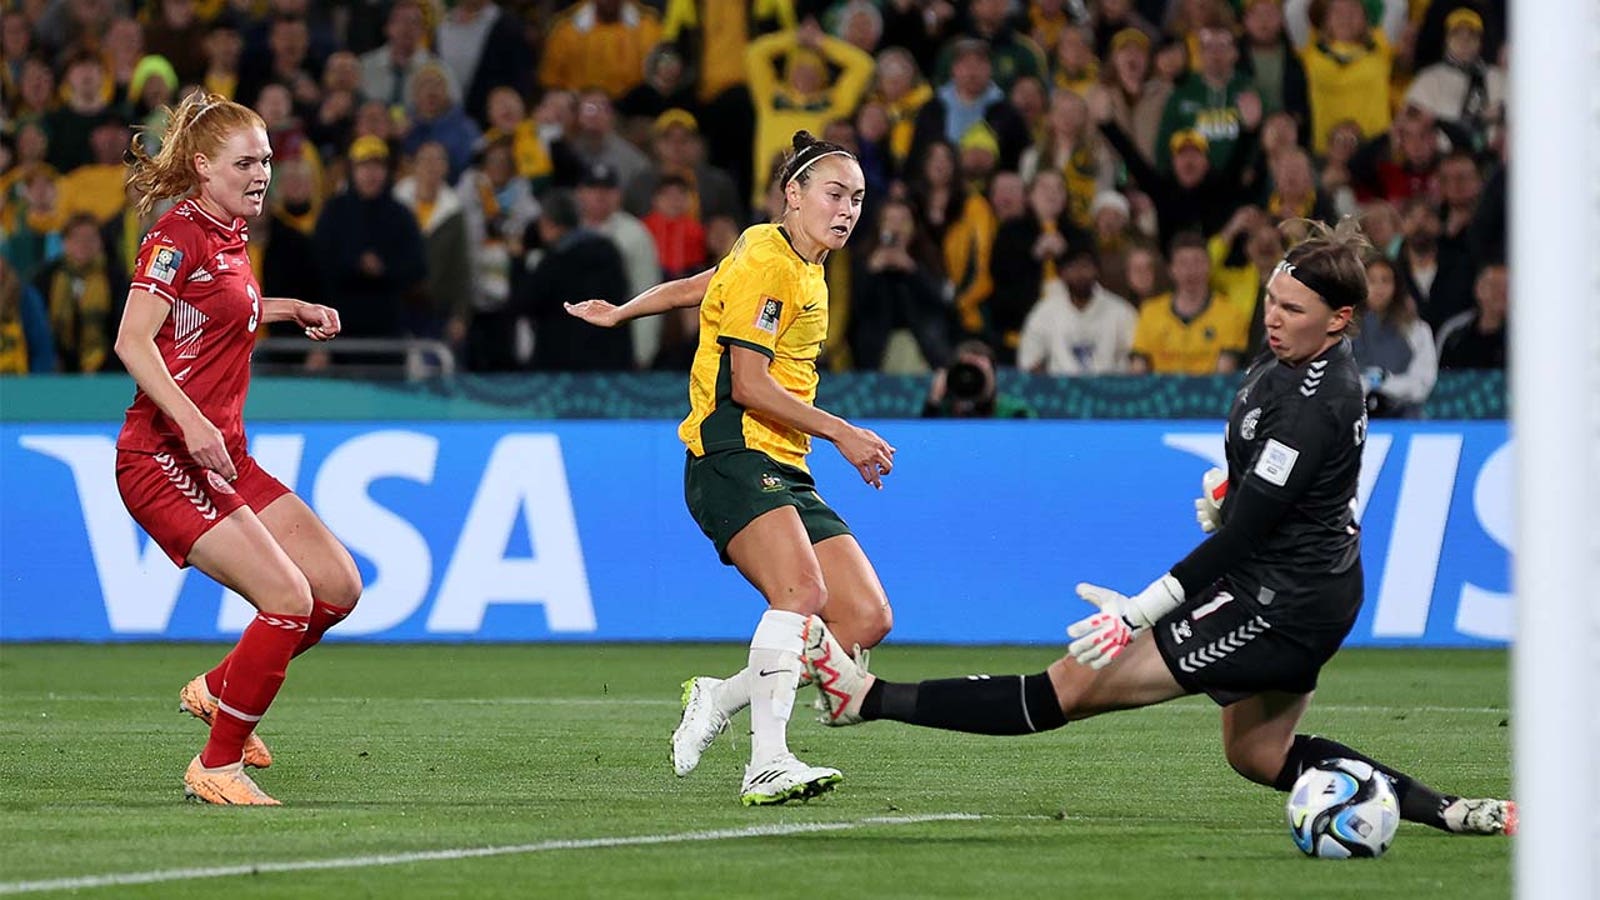 Australia's Caitlin Foord scores goal vs. Denmark in 28'